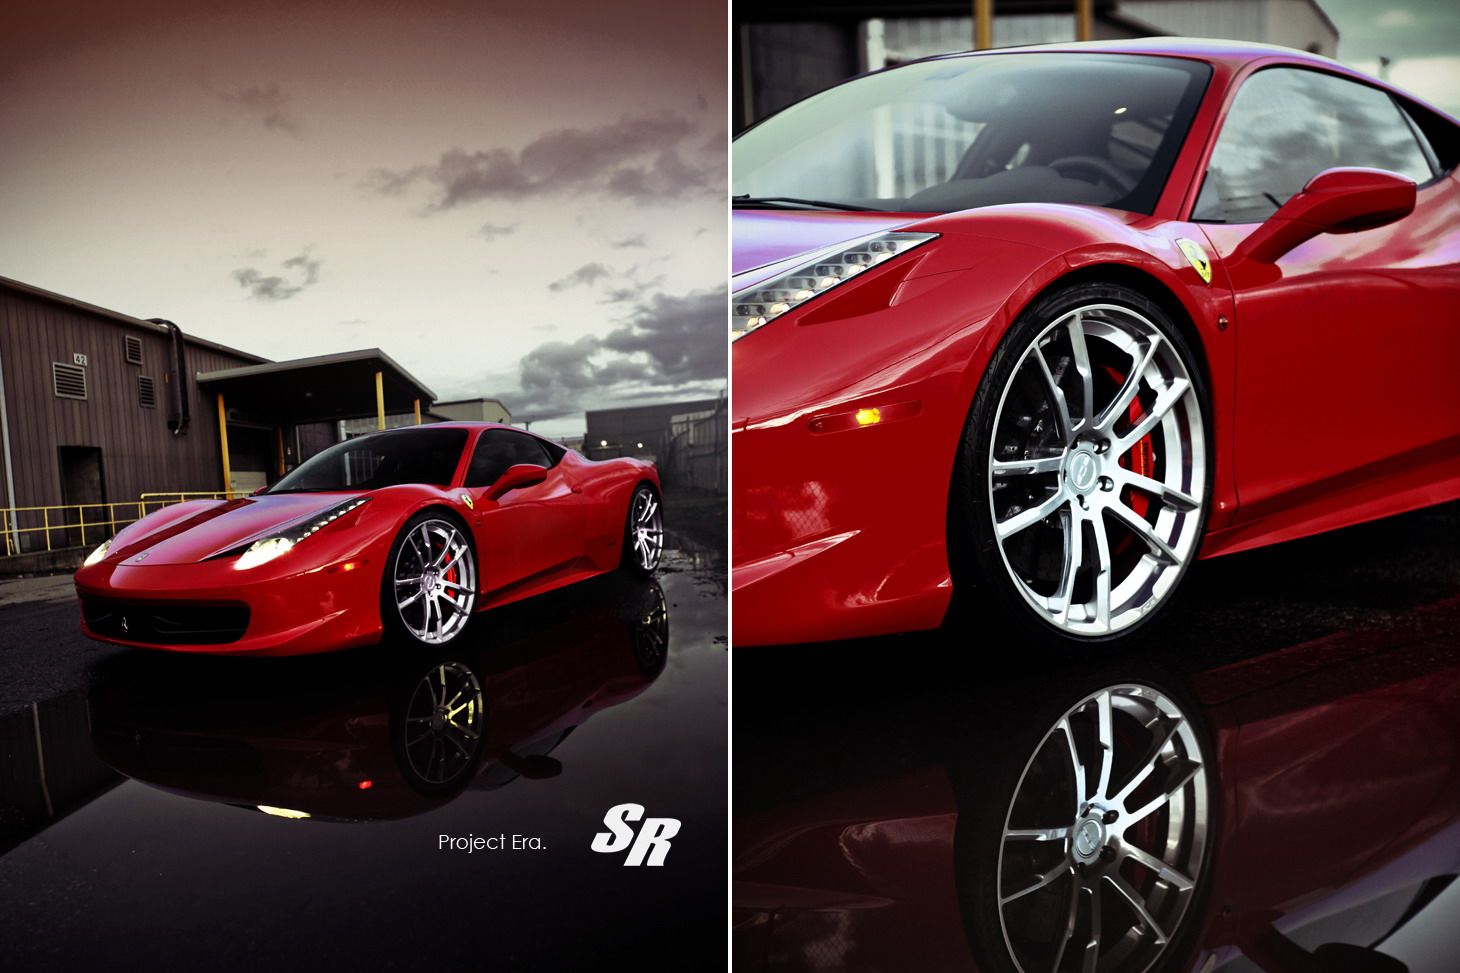 2012 Ferrari 458 Italia Project Era by SR Auto Group